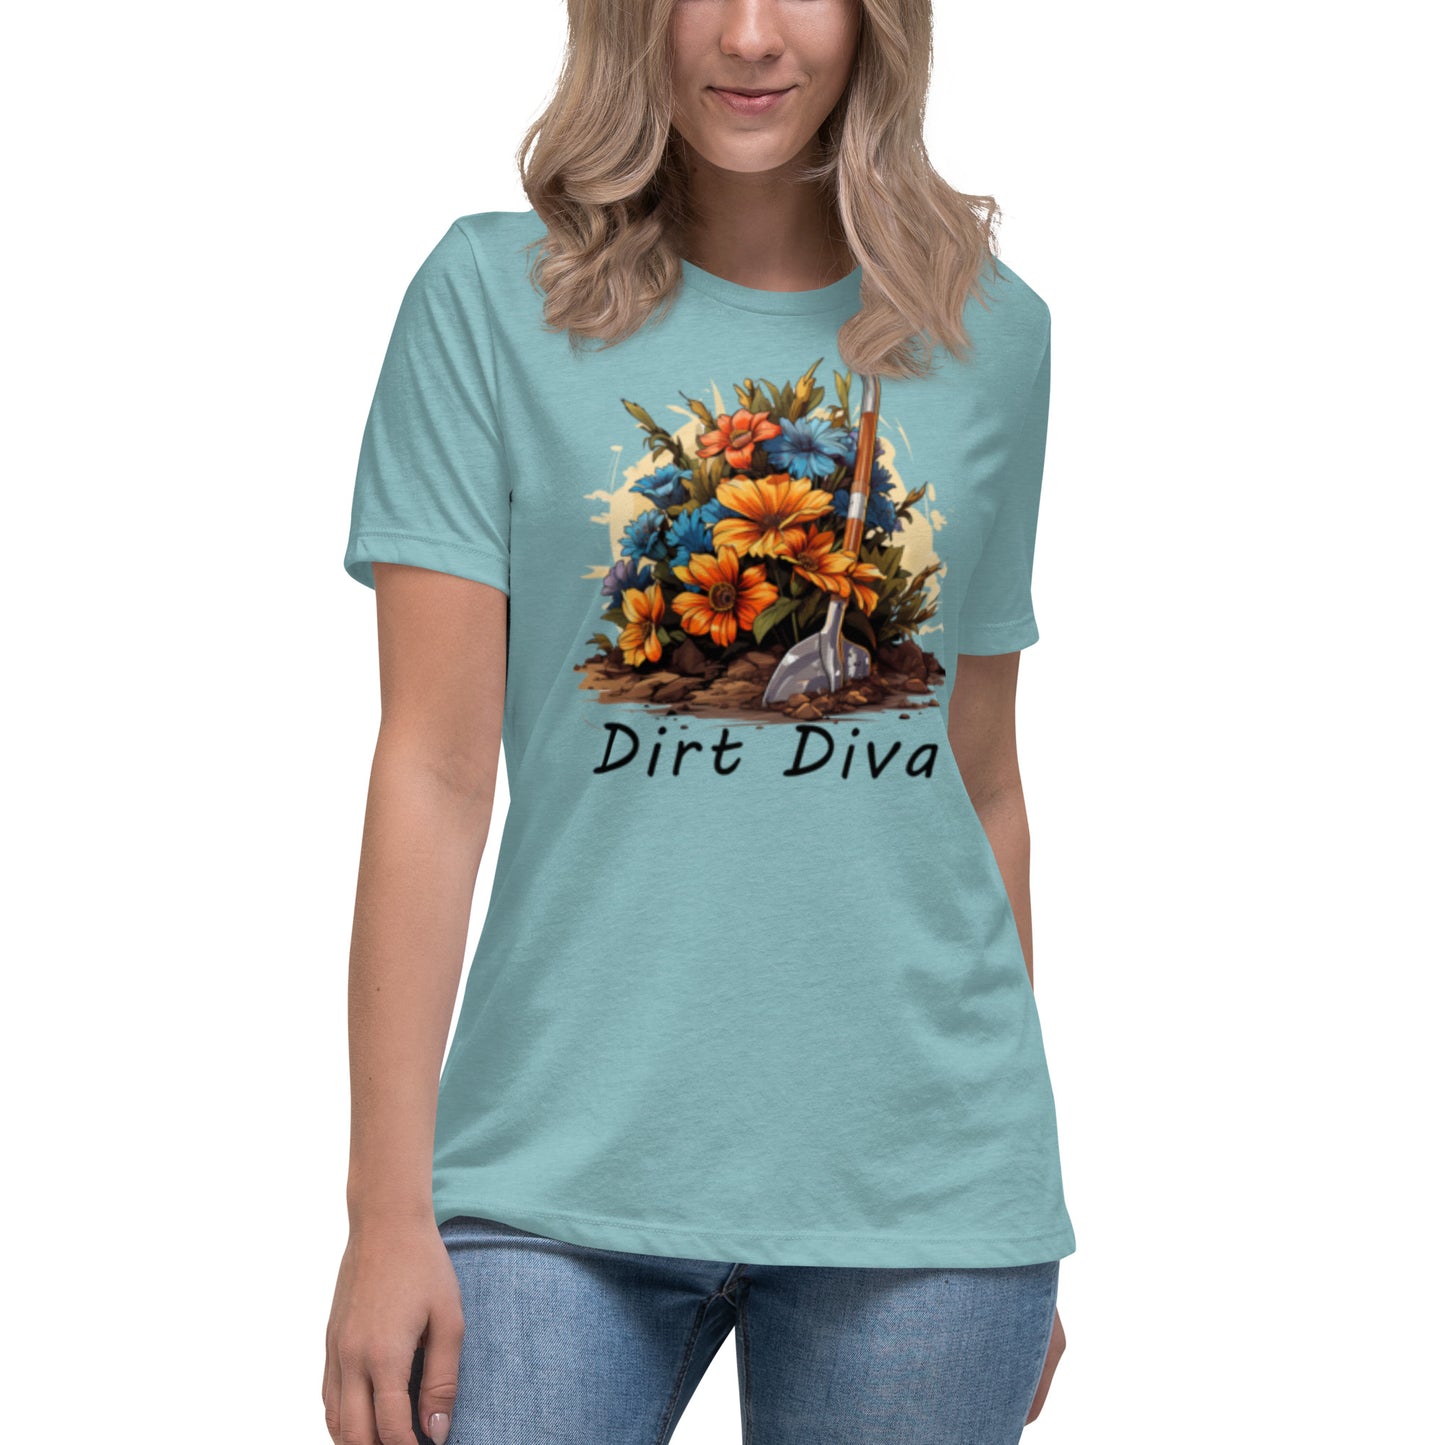 Dirt Diva Women's Relaxed T-Shirt